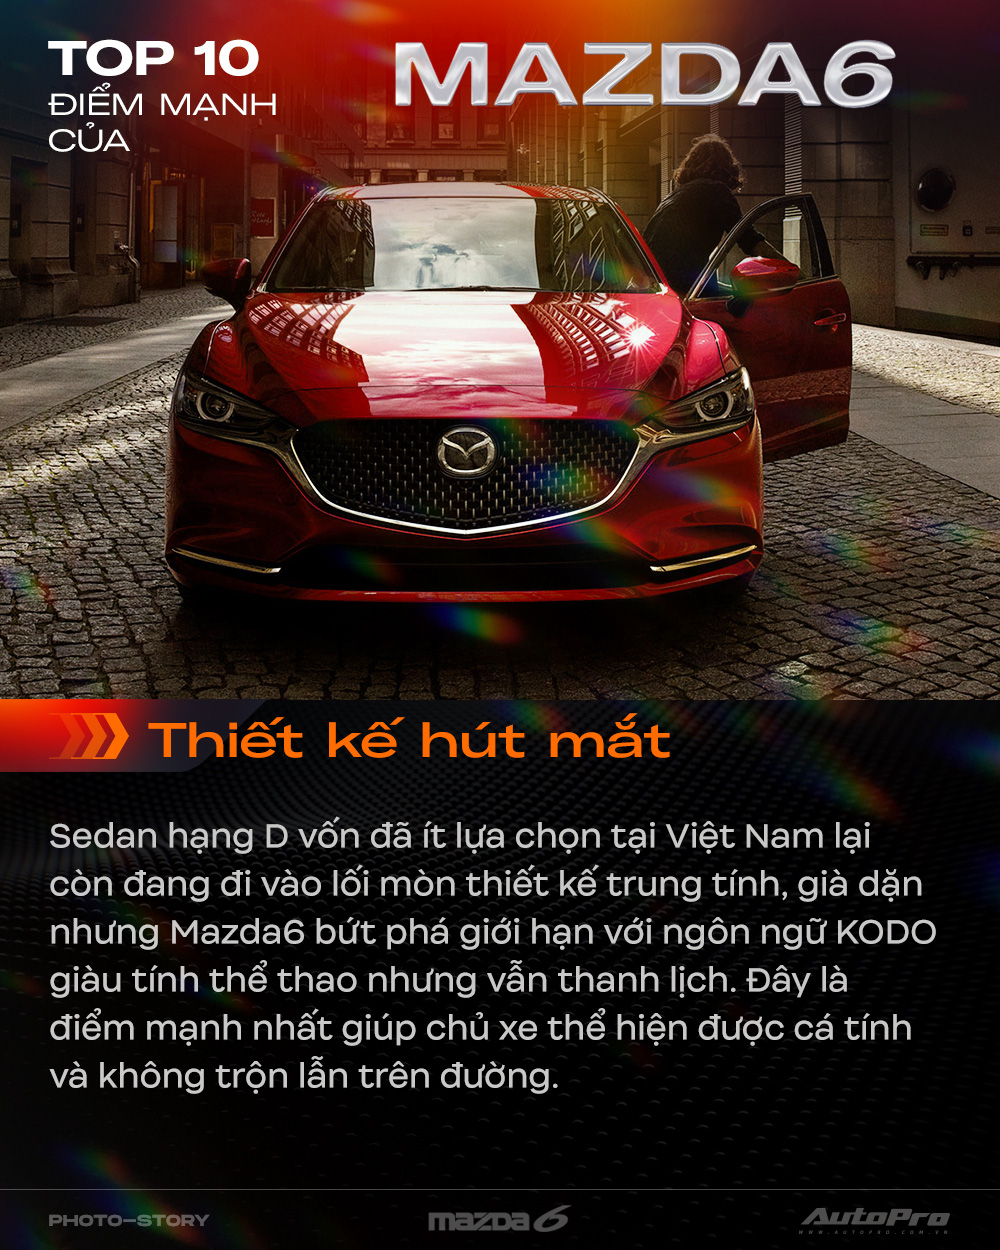 Mazda6: Với thiết kế sang trọng, đầy phong cách và khả năng vận hành ổn định, Mazda6 là sự lựa chọn hoàn hảo cho những ai yêu thích xe hơi cao cấp. Hãy thưởng thức những đường cong hoàn hảo trên các bức hình xe Mazda6 và cảm nhận được sự khác biệt của chiếc xe này.